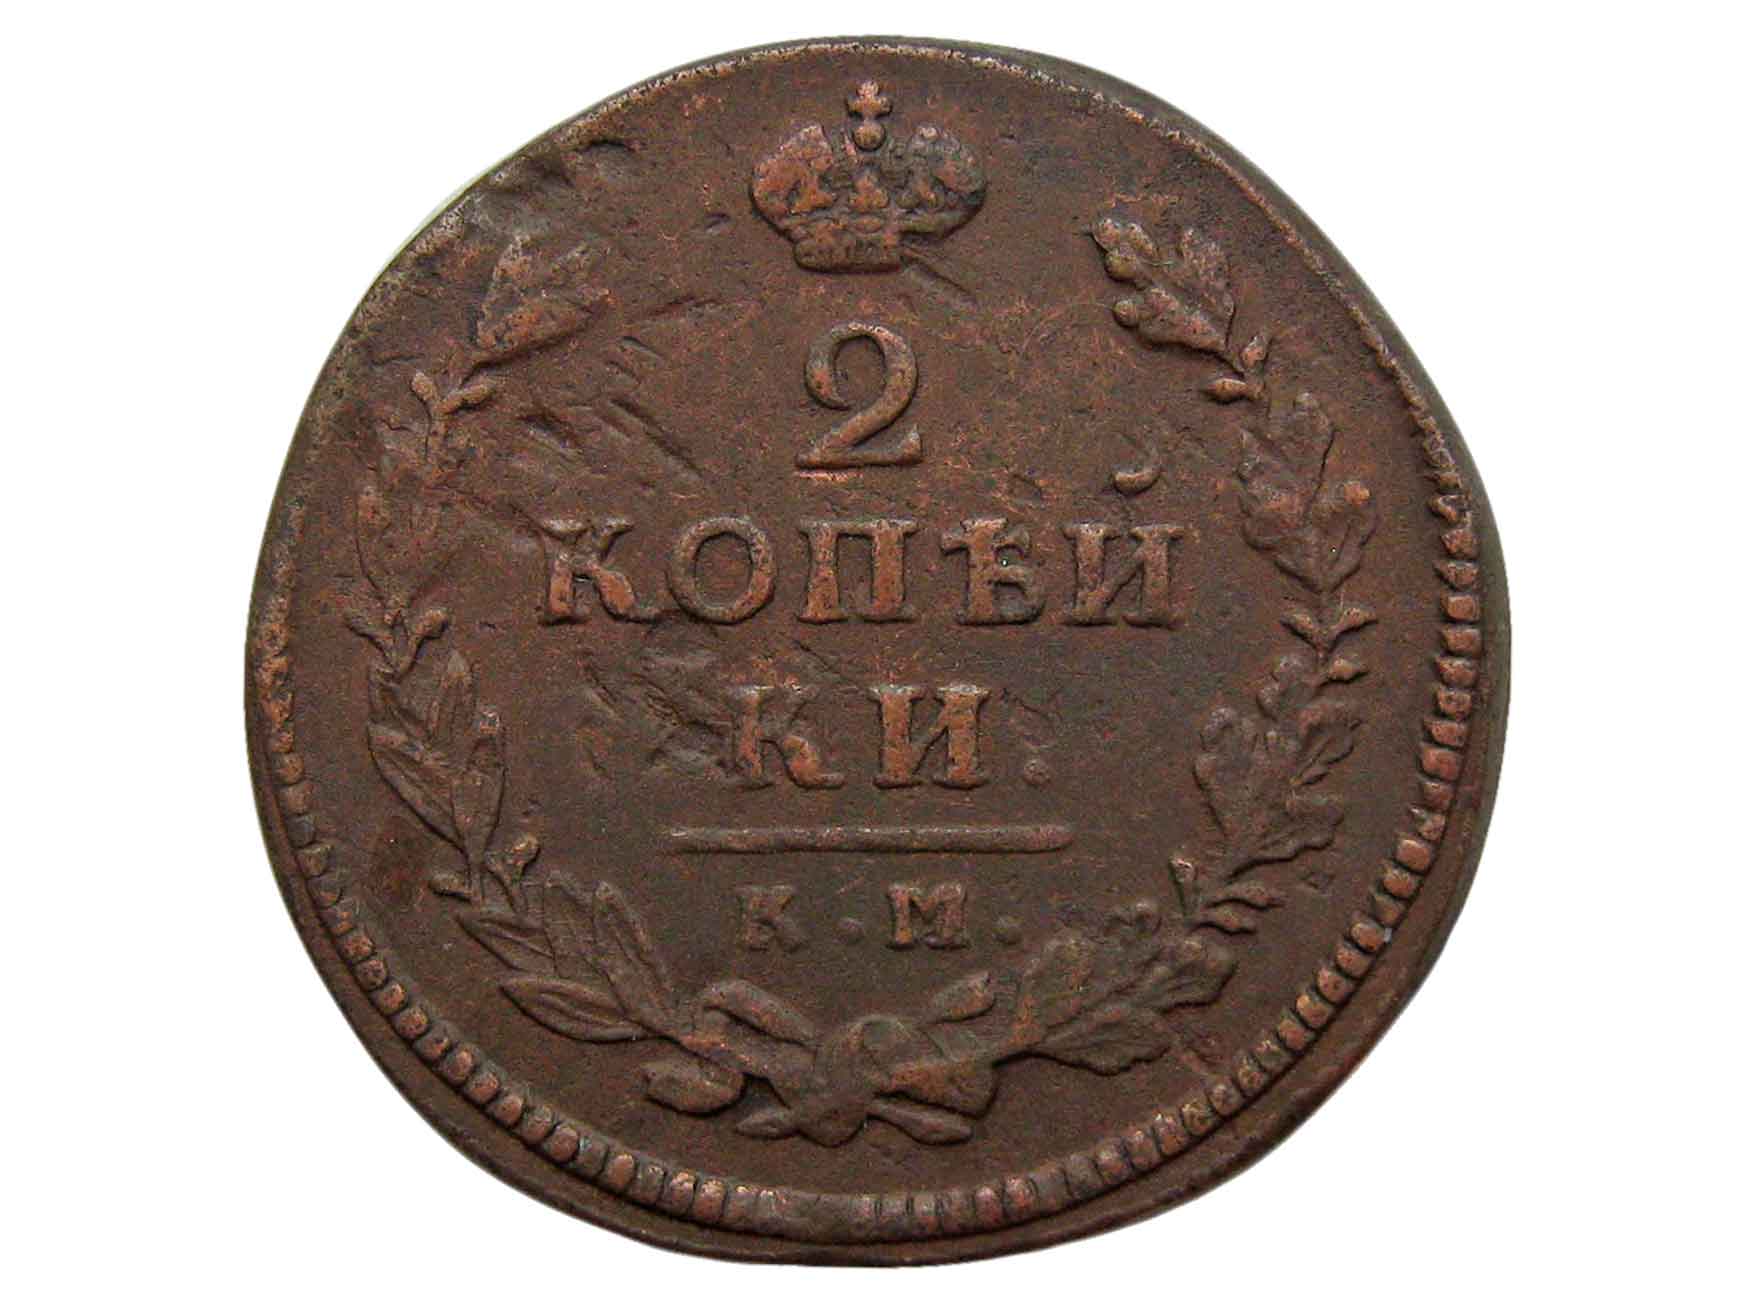 Царский коп. Монета 1815 2 копейки. Царские 2 копейки 1815. 2 Копейки царские медные. Монета 2 копейки 1815 года.